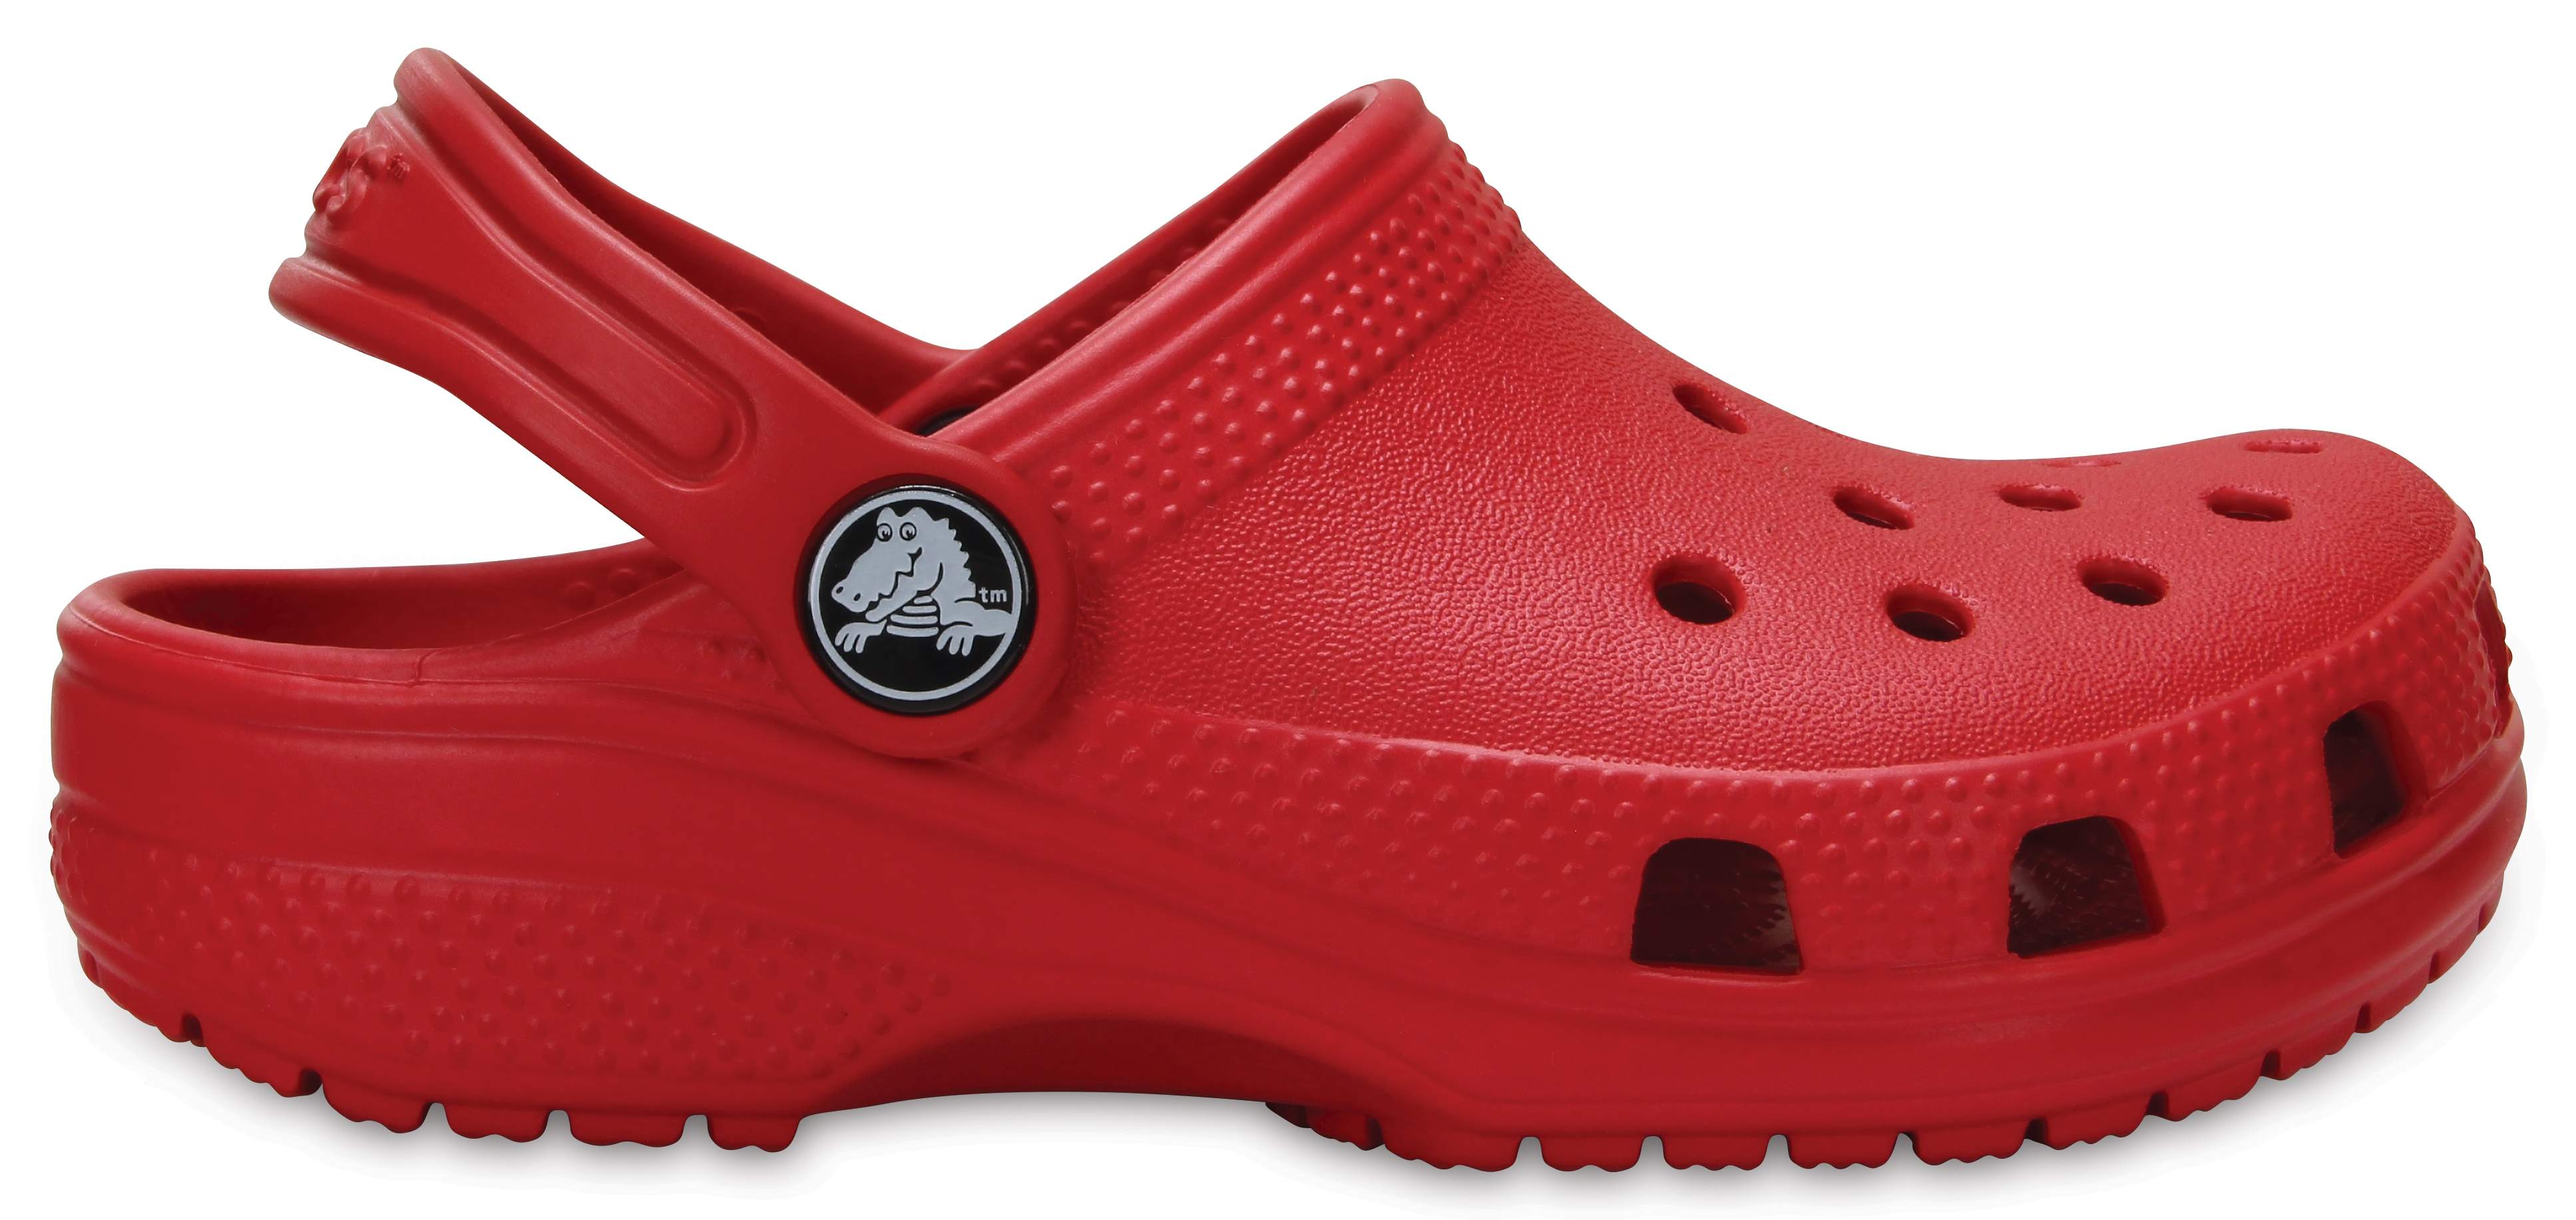 Kids' Classic Clog - Crocs